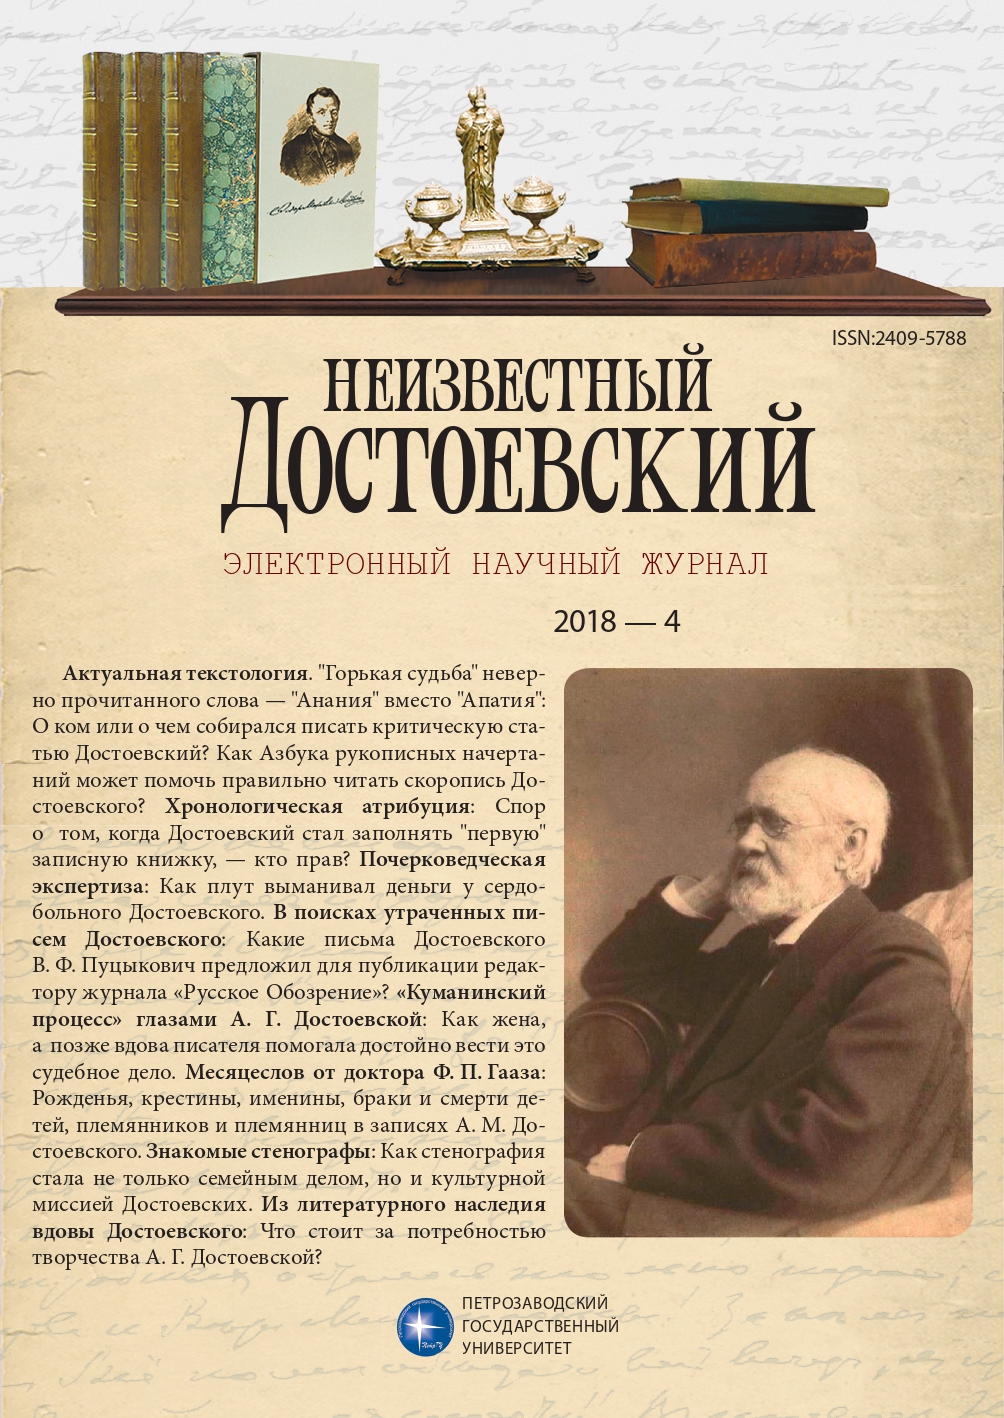 Проблемы хронологической атрибуции «первой» записной книжки Ф. М. Достоевского